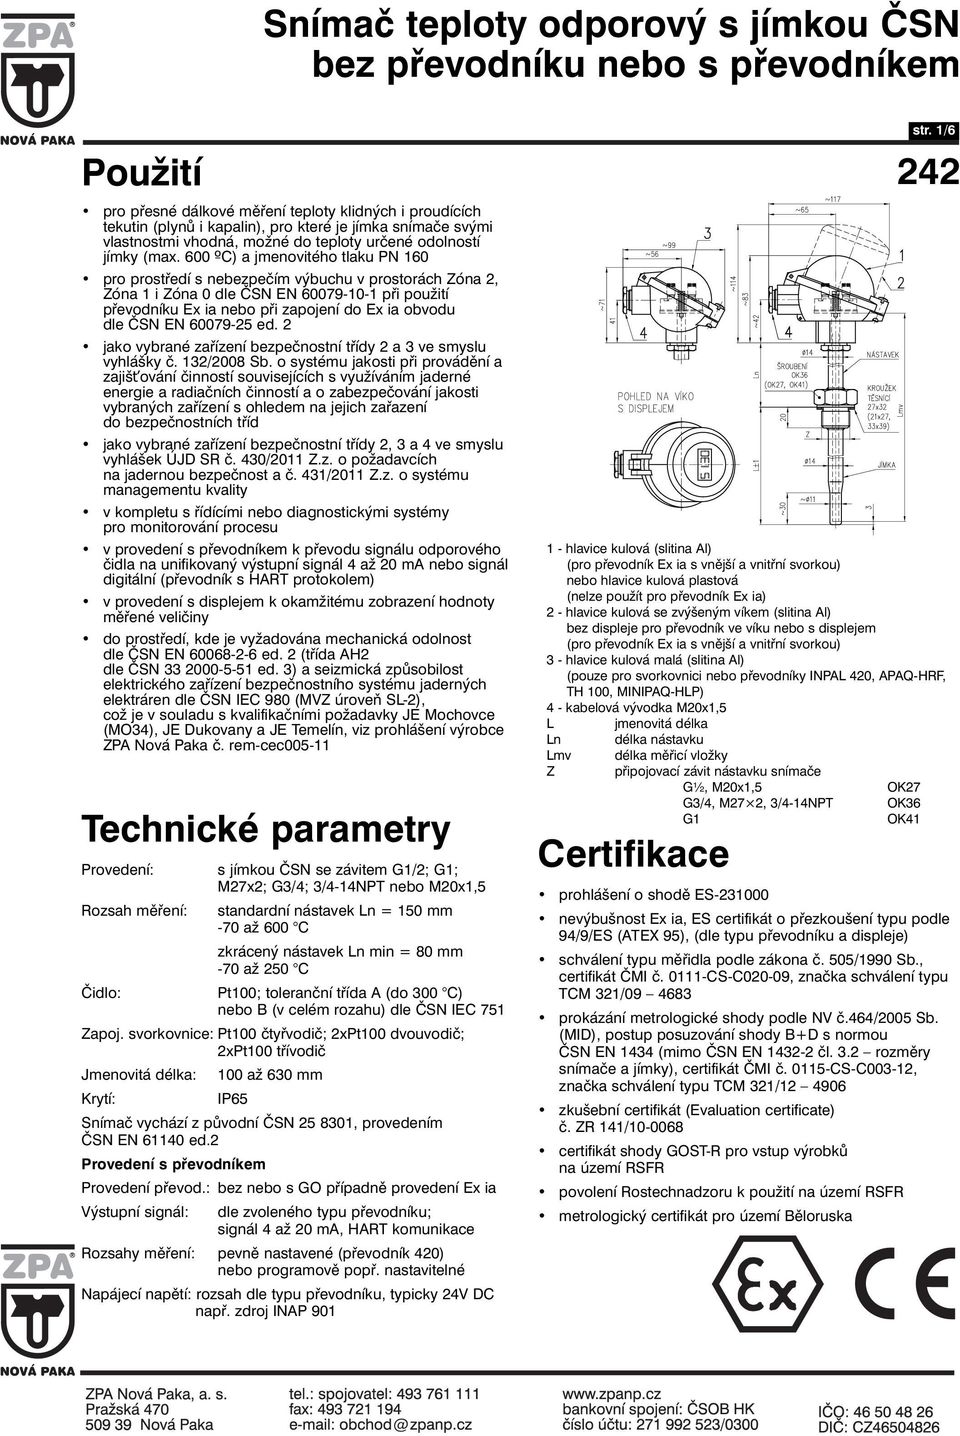 EN 60079-25 ed. 2 jako vybrané zařízení bezpečnostní třídy 2 a 3 ve smyslu vyhlášky č. 132/2008 Sb.